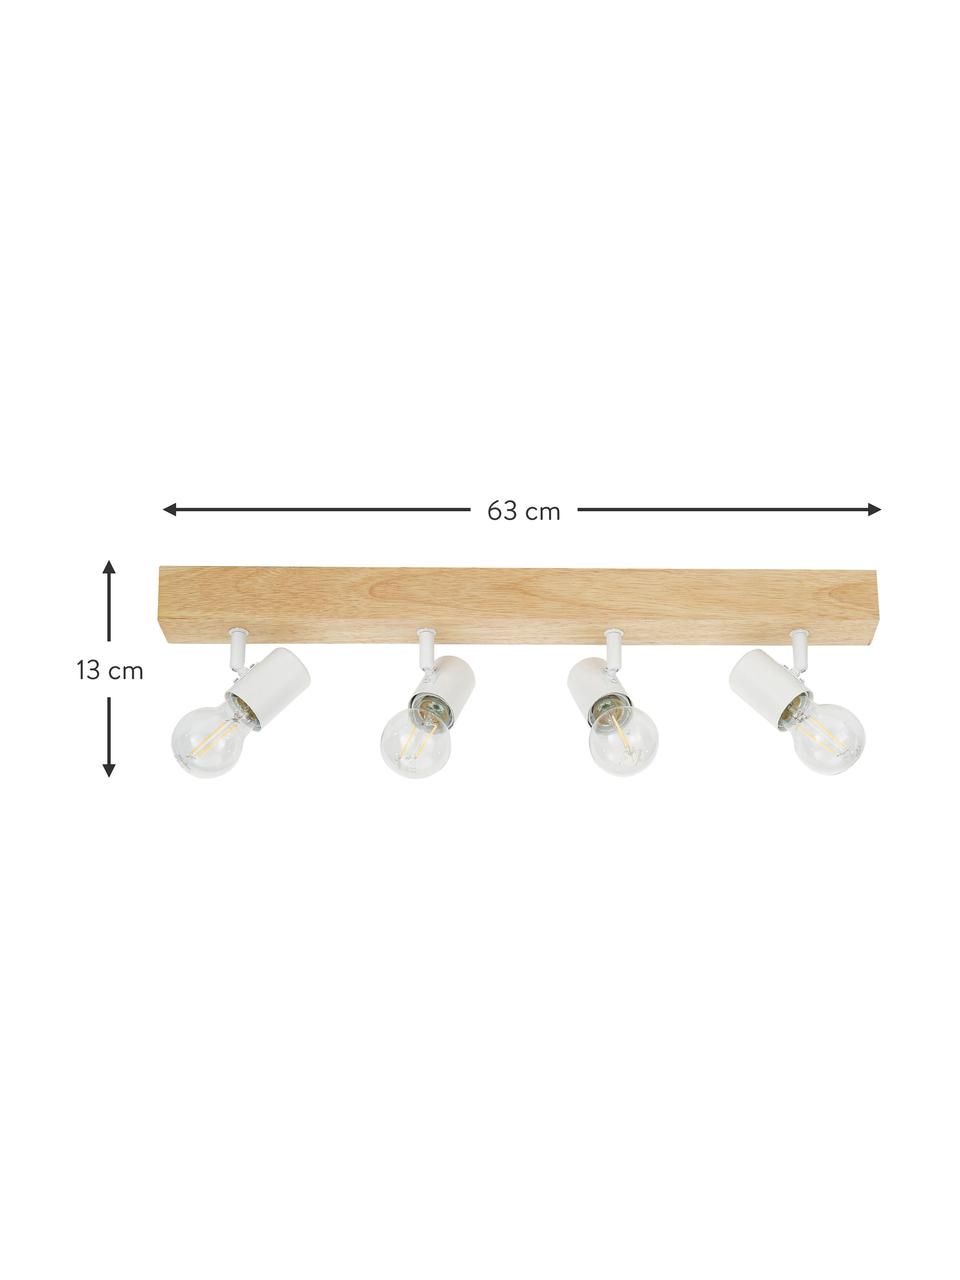 Dřevěné stropní svítidlo Townshend, Bílá, světlé dřevo, Š 63 cm, V 13 cm